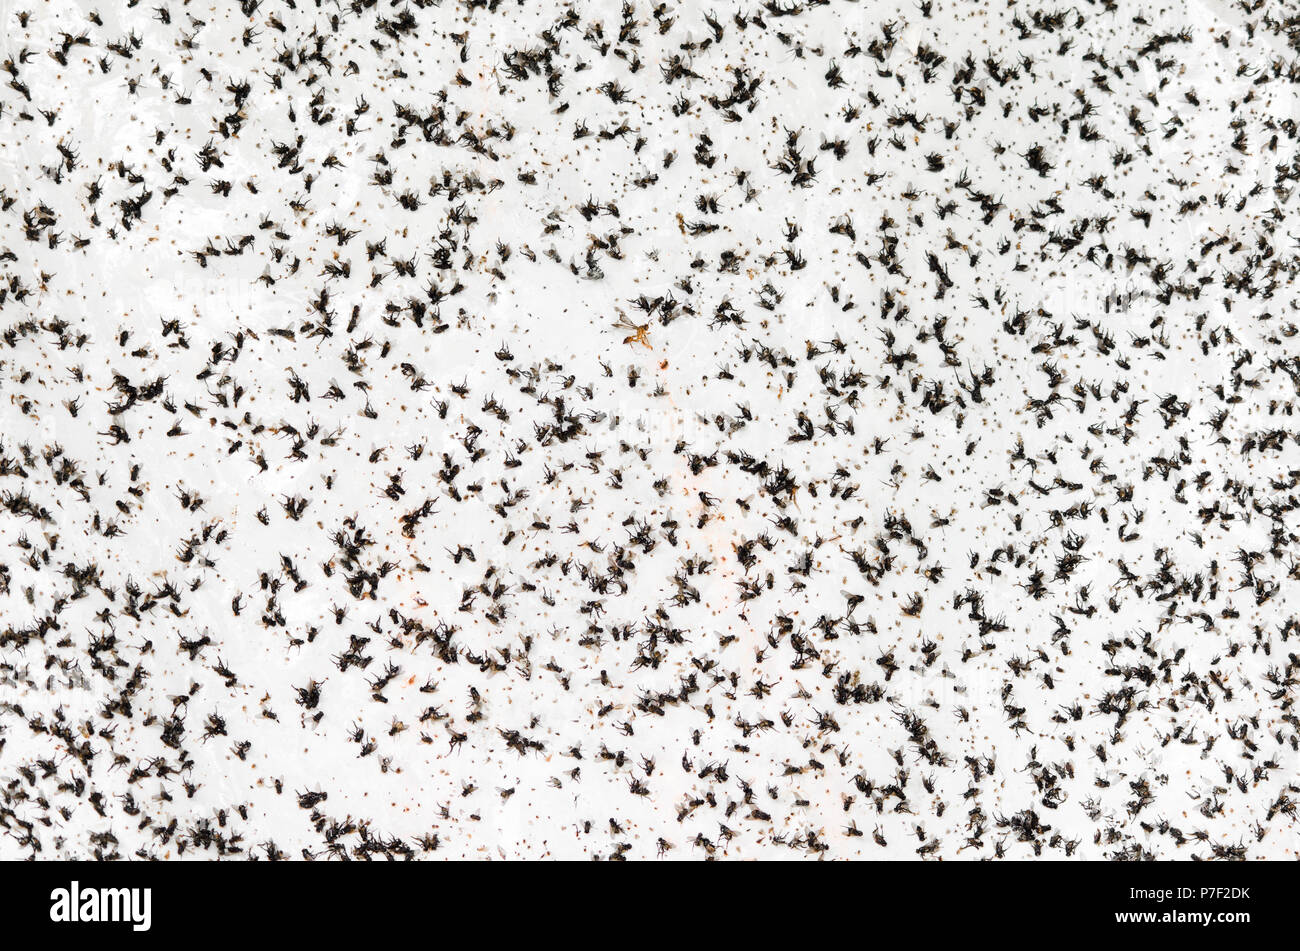 Una massa di insetti volanti sono intrappolati su un adesivo bianco parete. Foto Stock